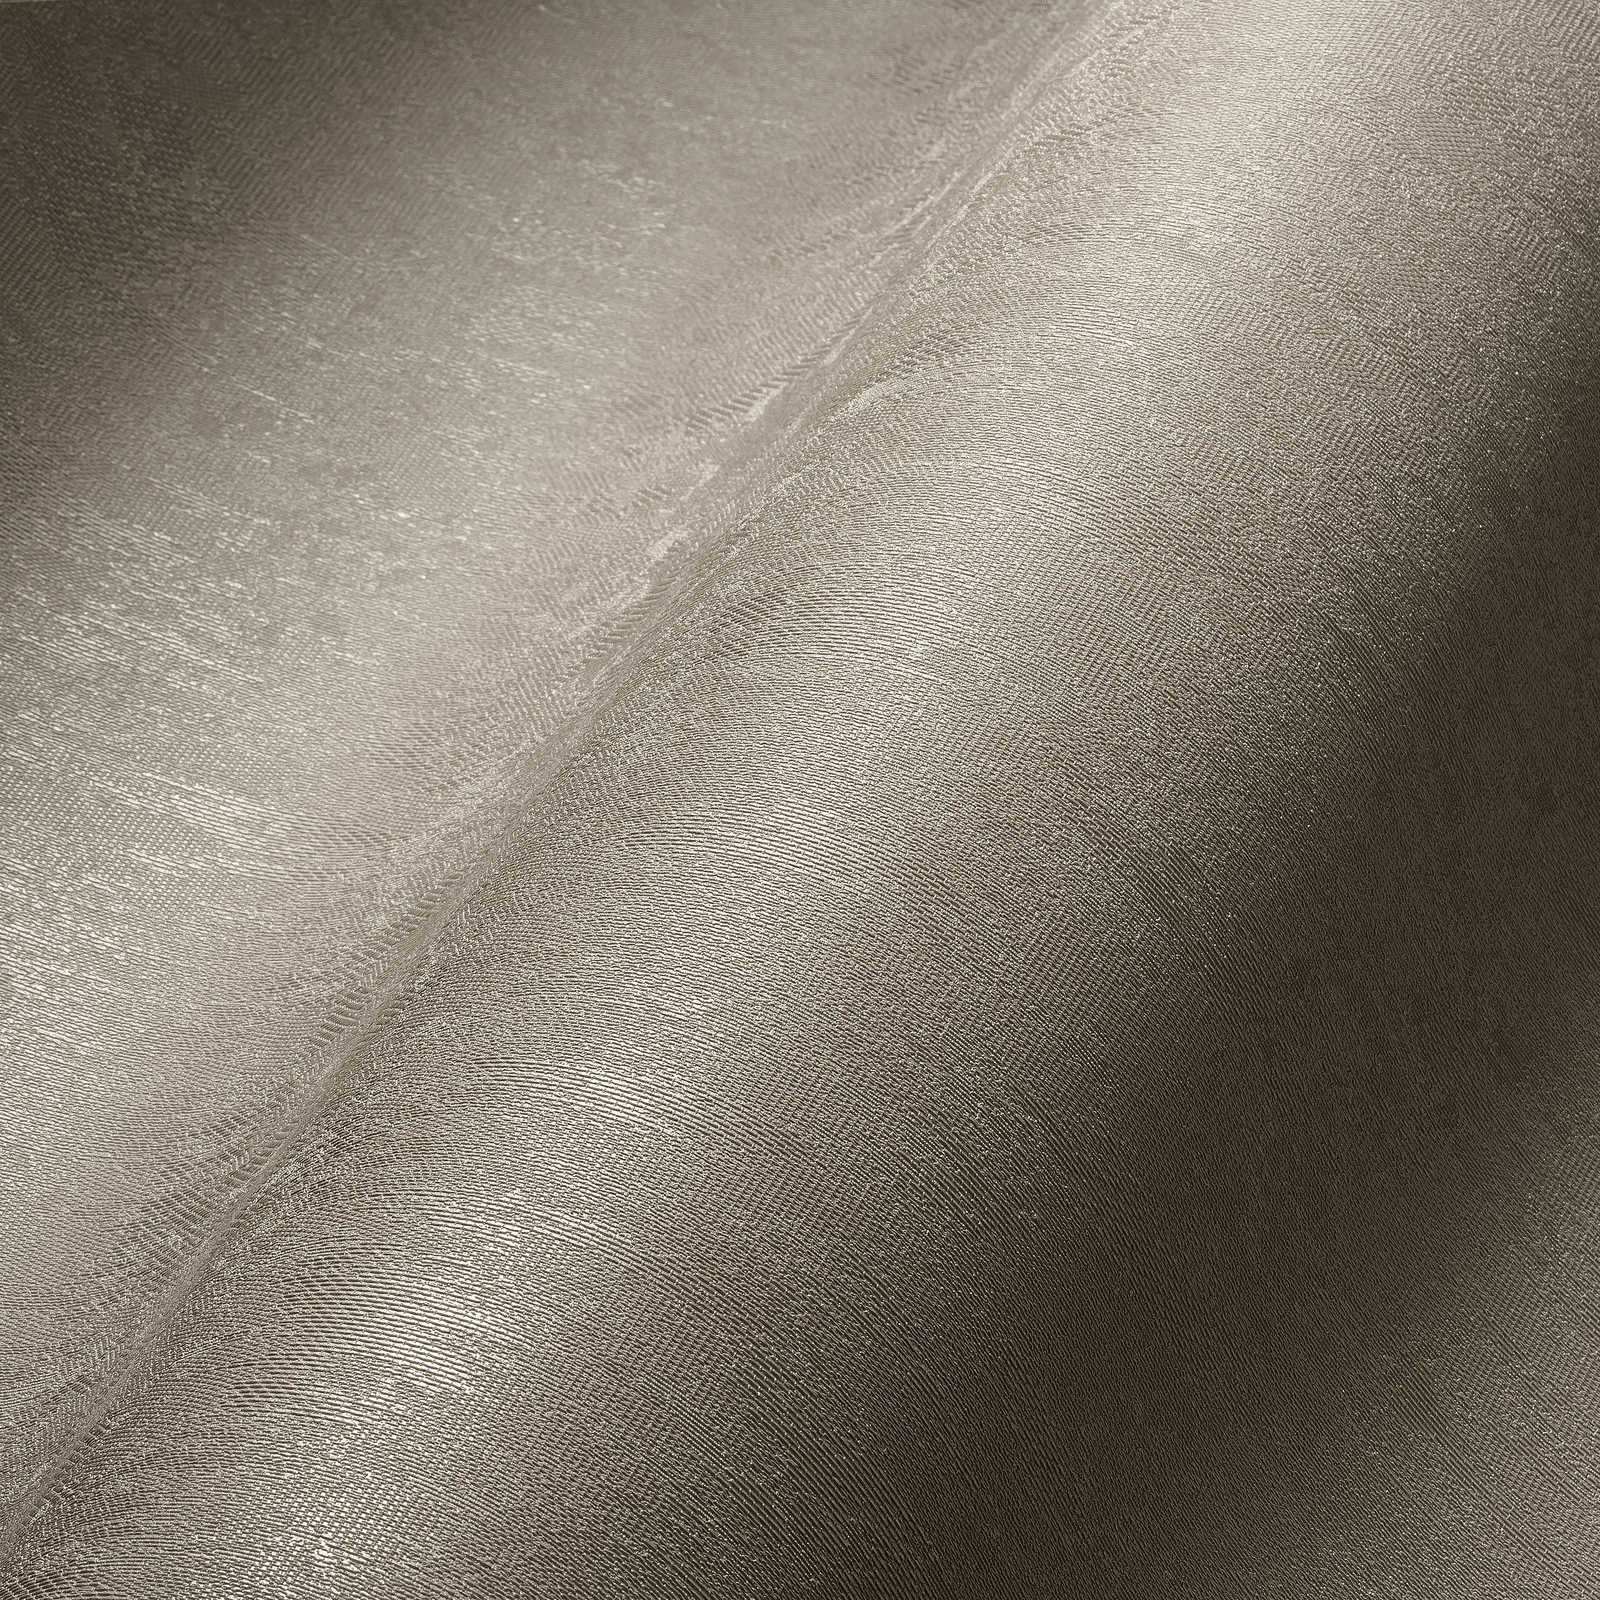             Papier peint uni neutre gris-beige avec surface structurée
        